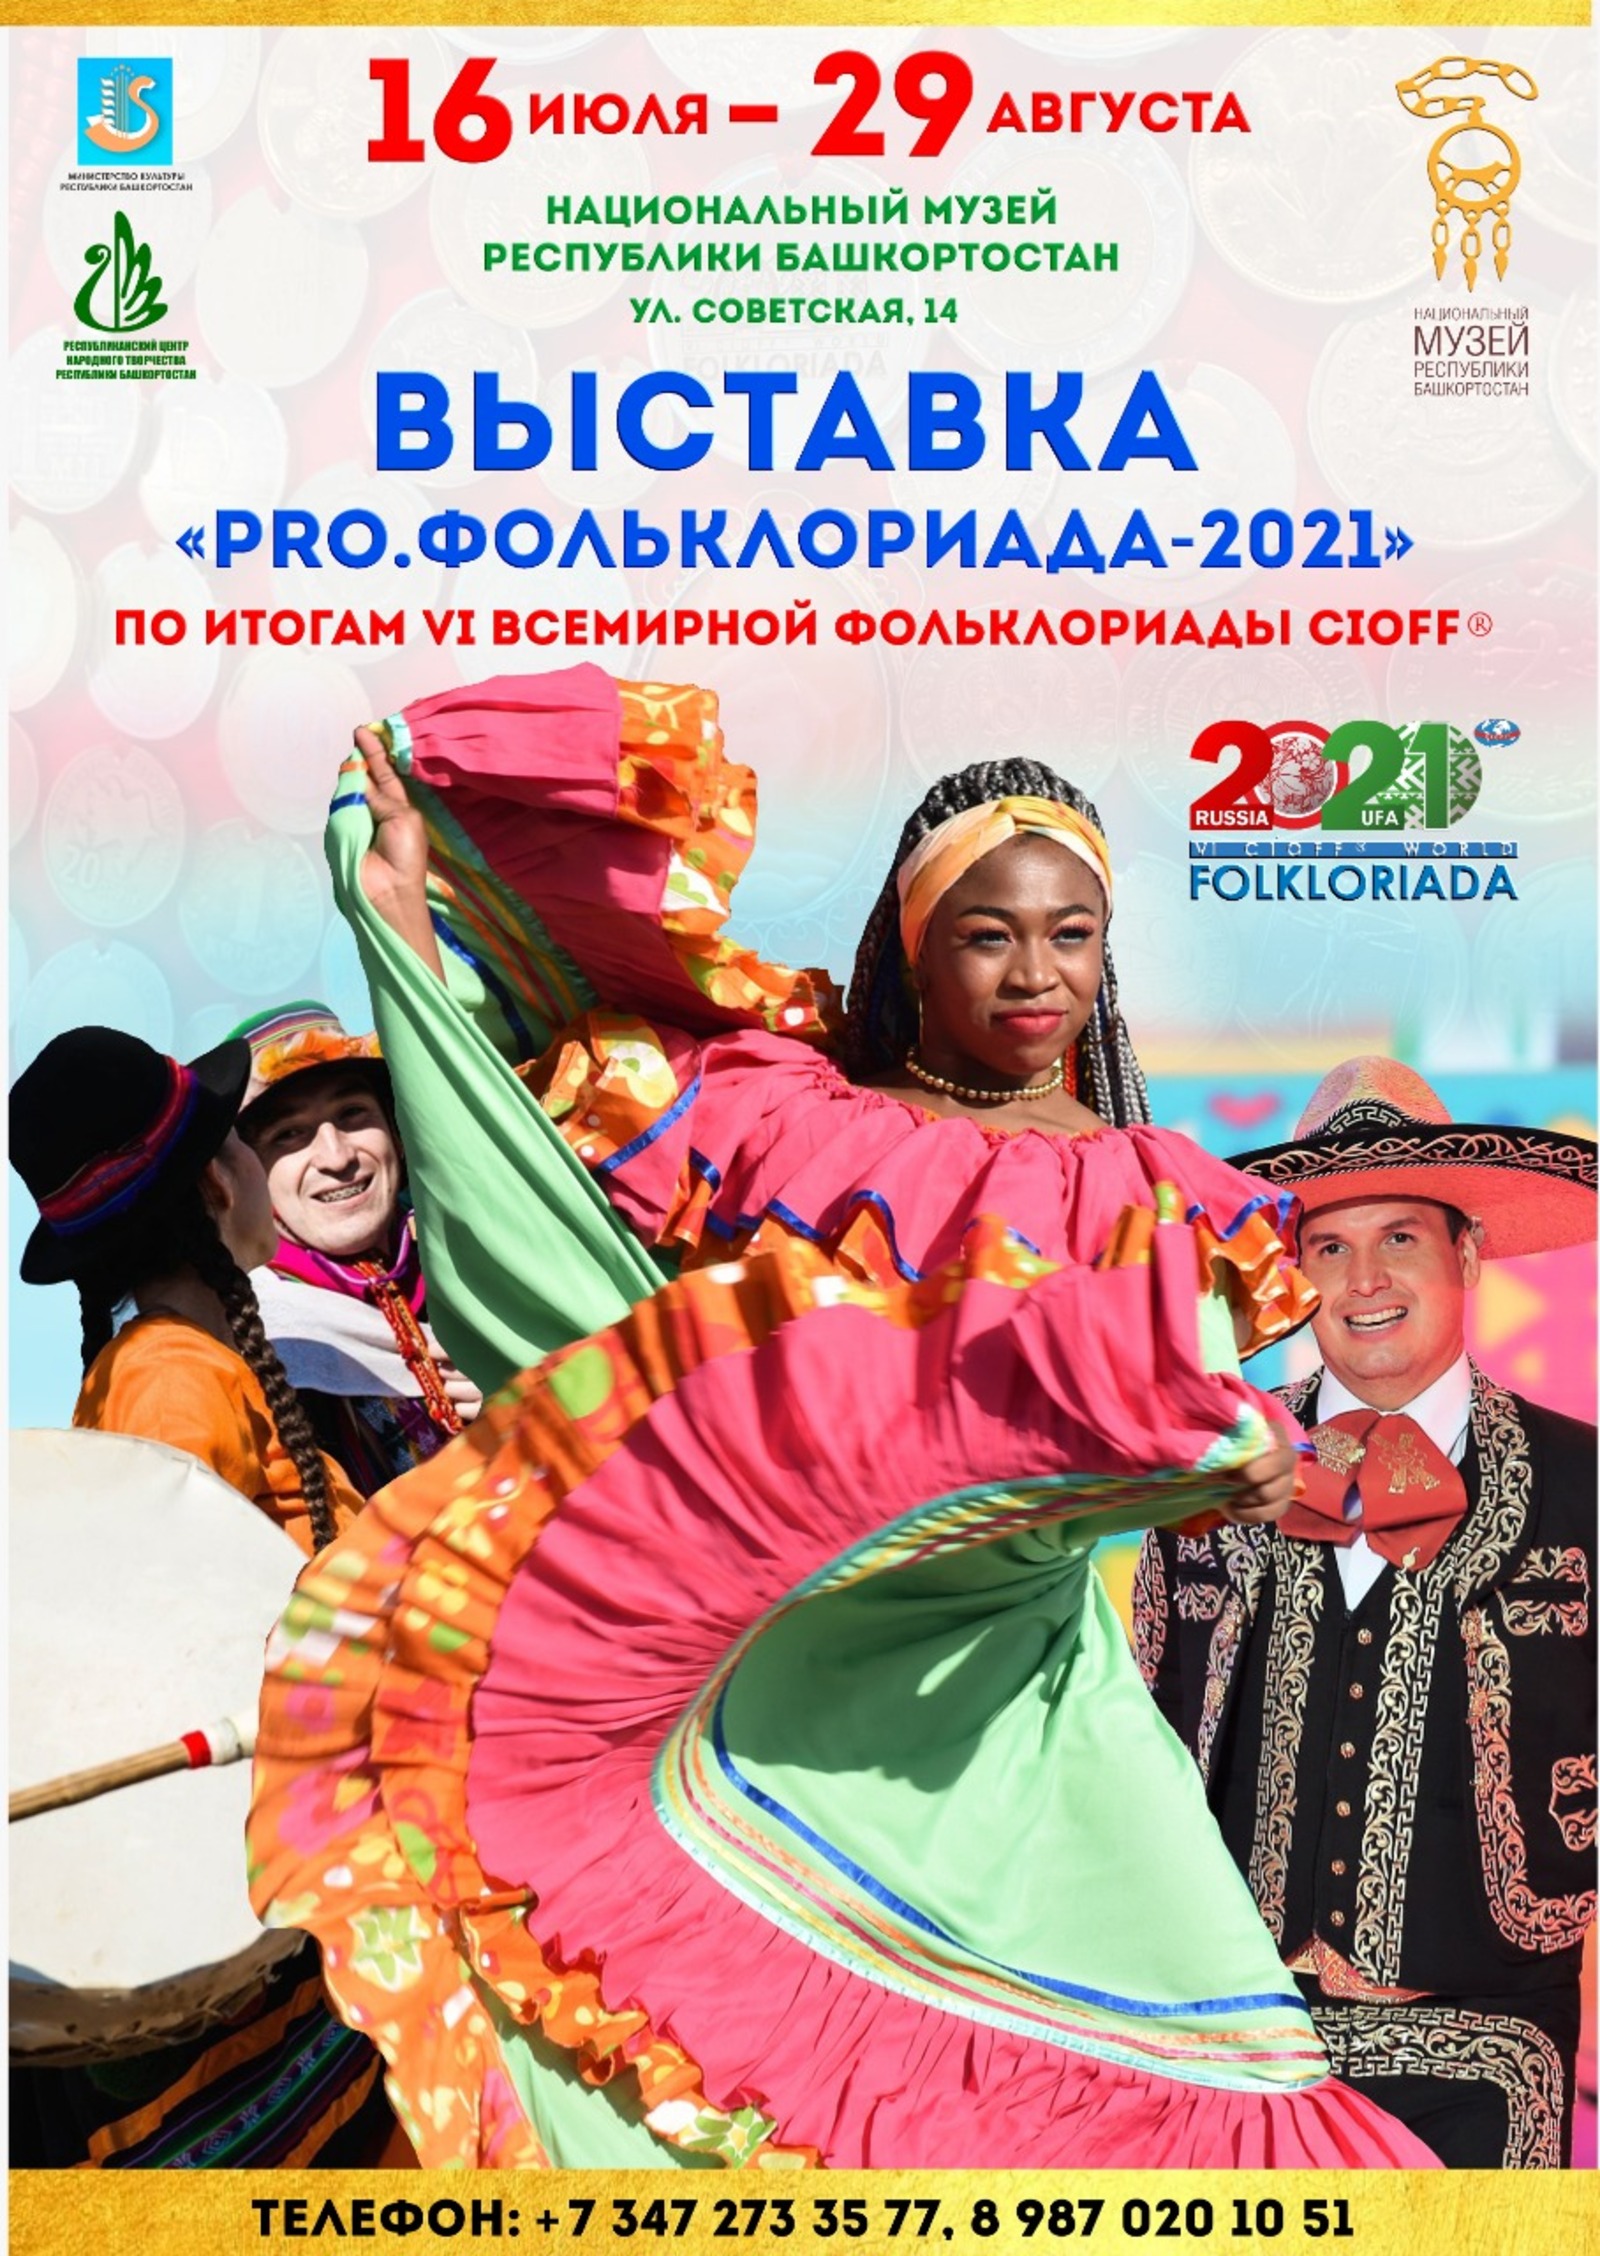 В Национальном музее Республики Башкортостан откроется выставка, посвященная VI Всемирной фольклориаде CIOFF®️